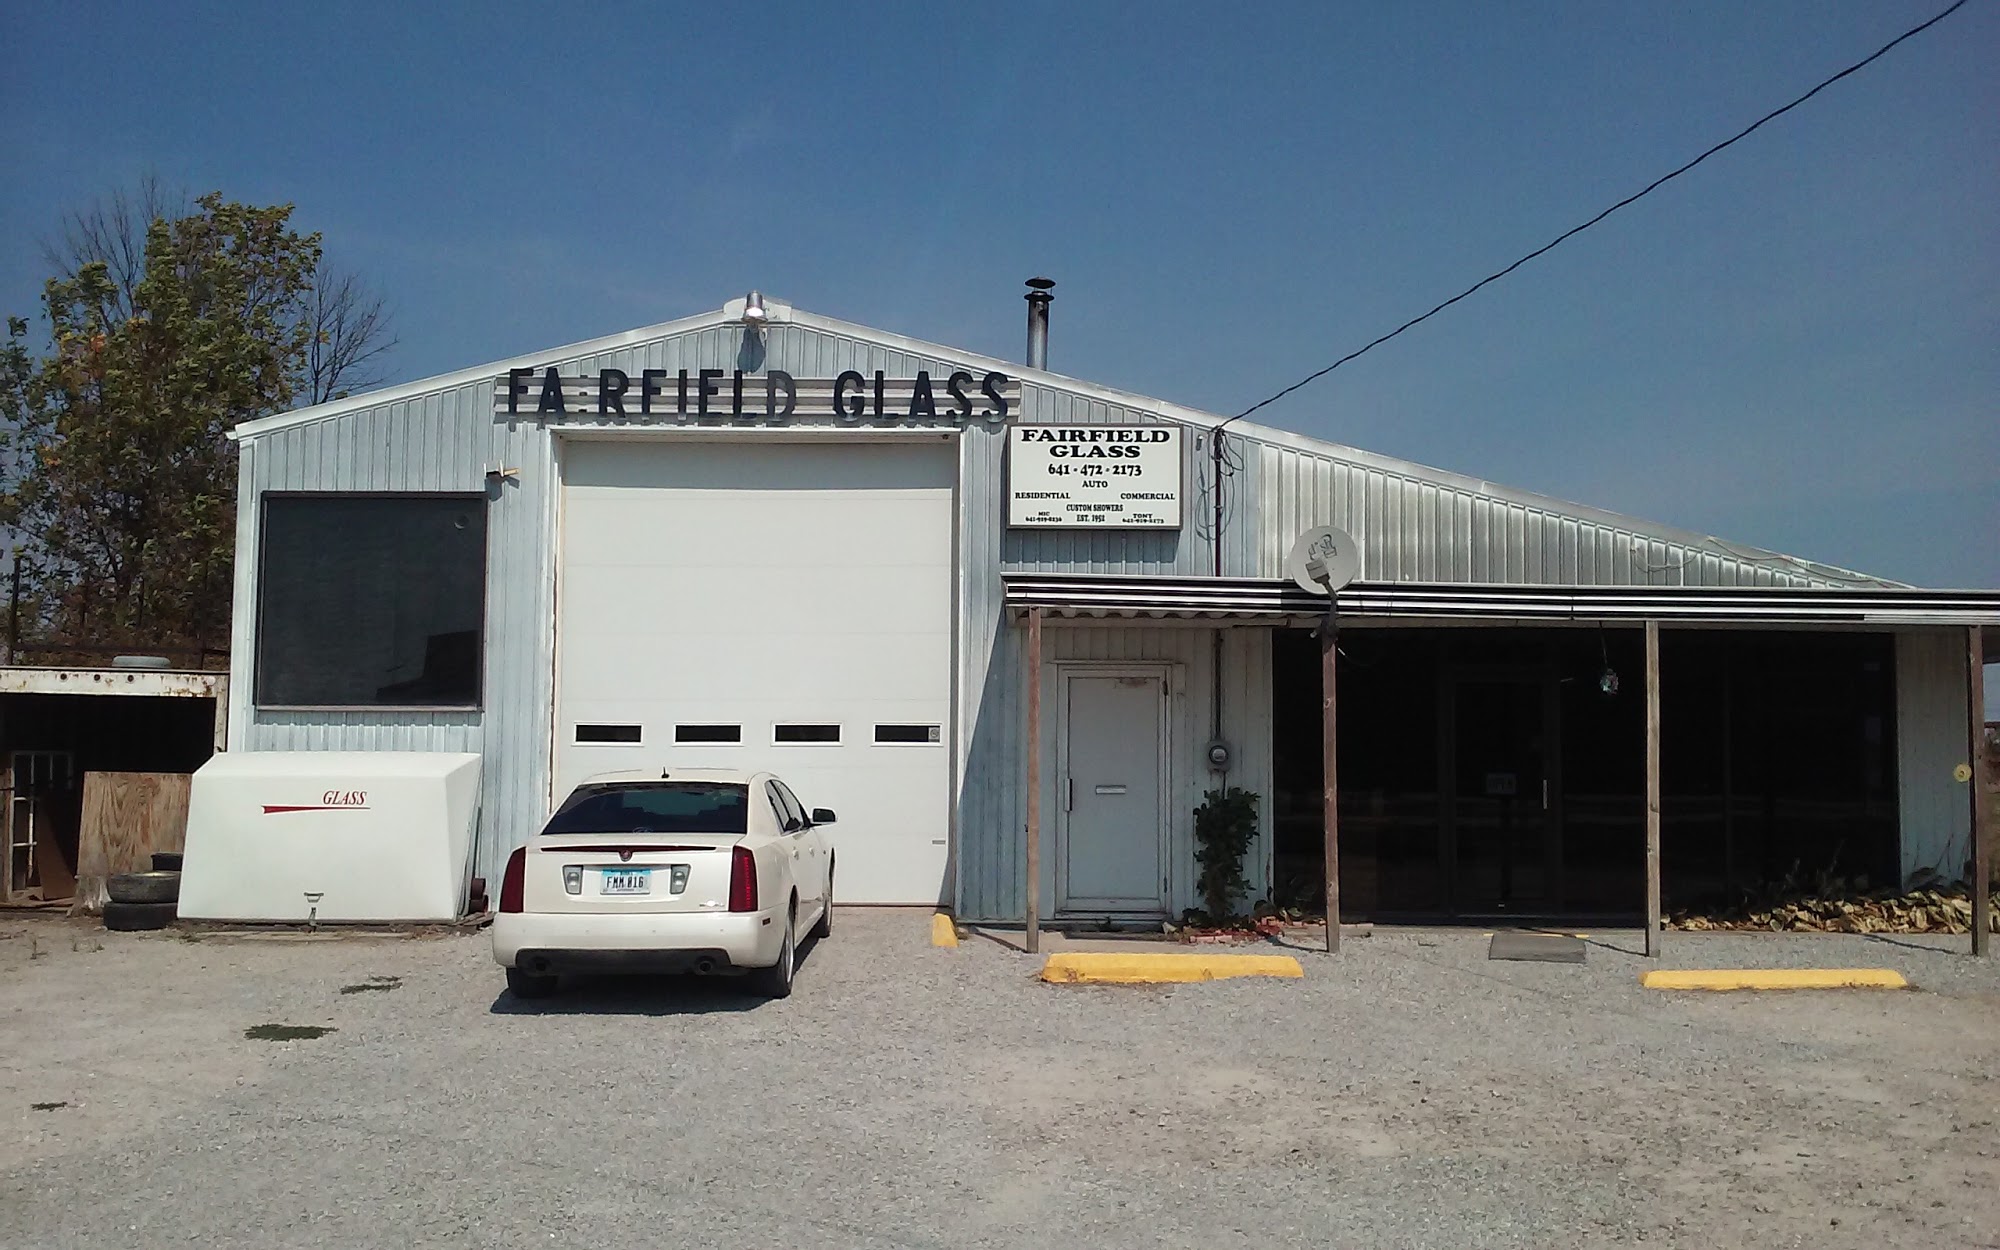 Fairfield Glass